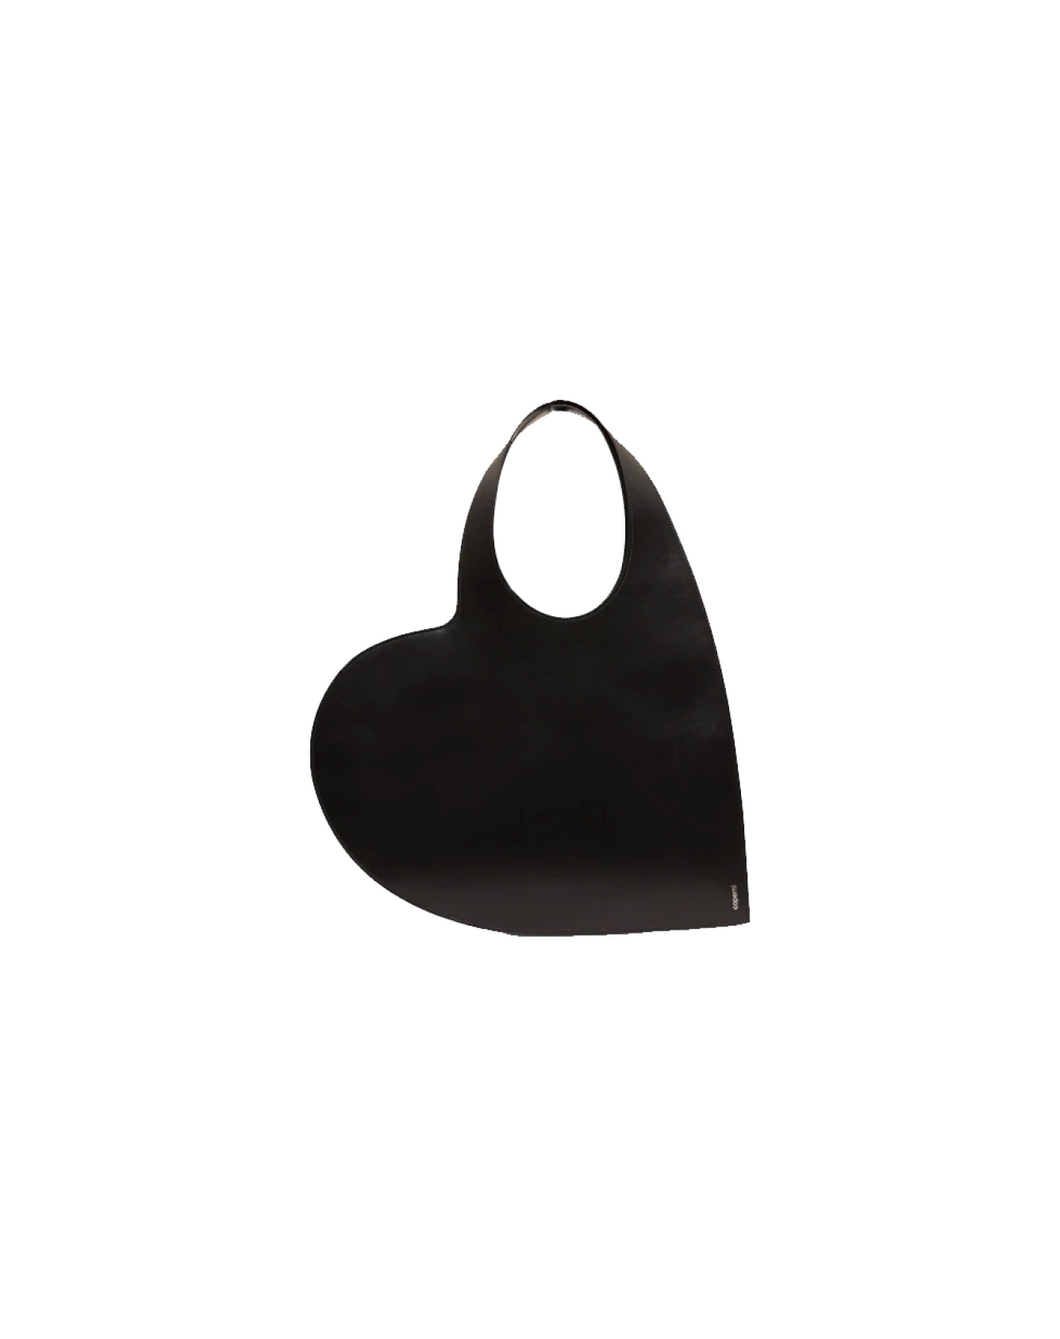 Coeperni - Heart Tote Bag - Black